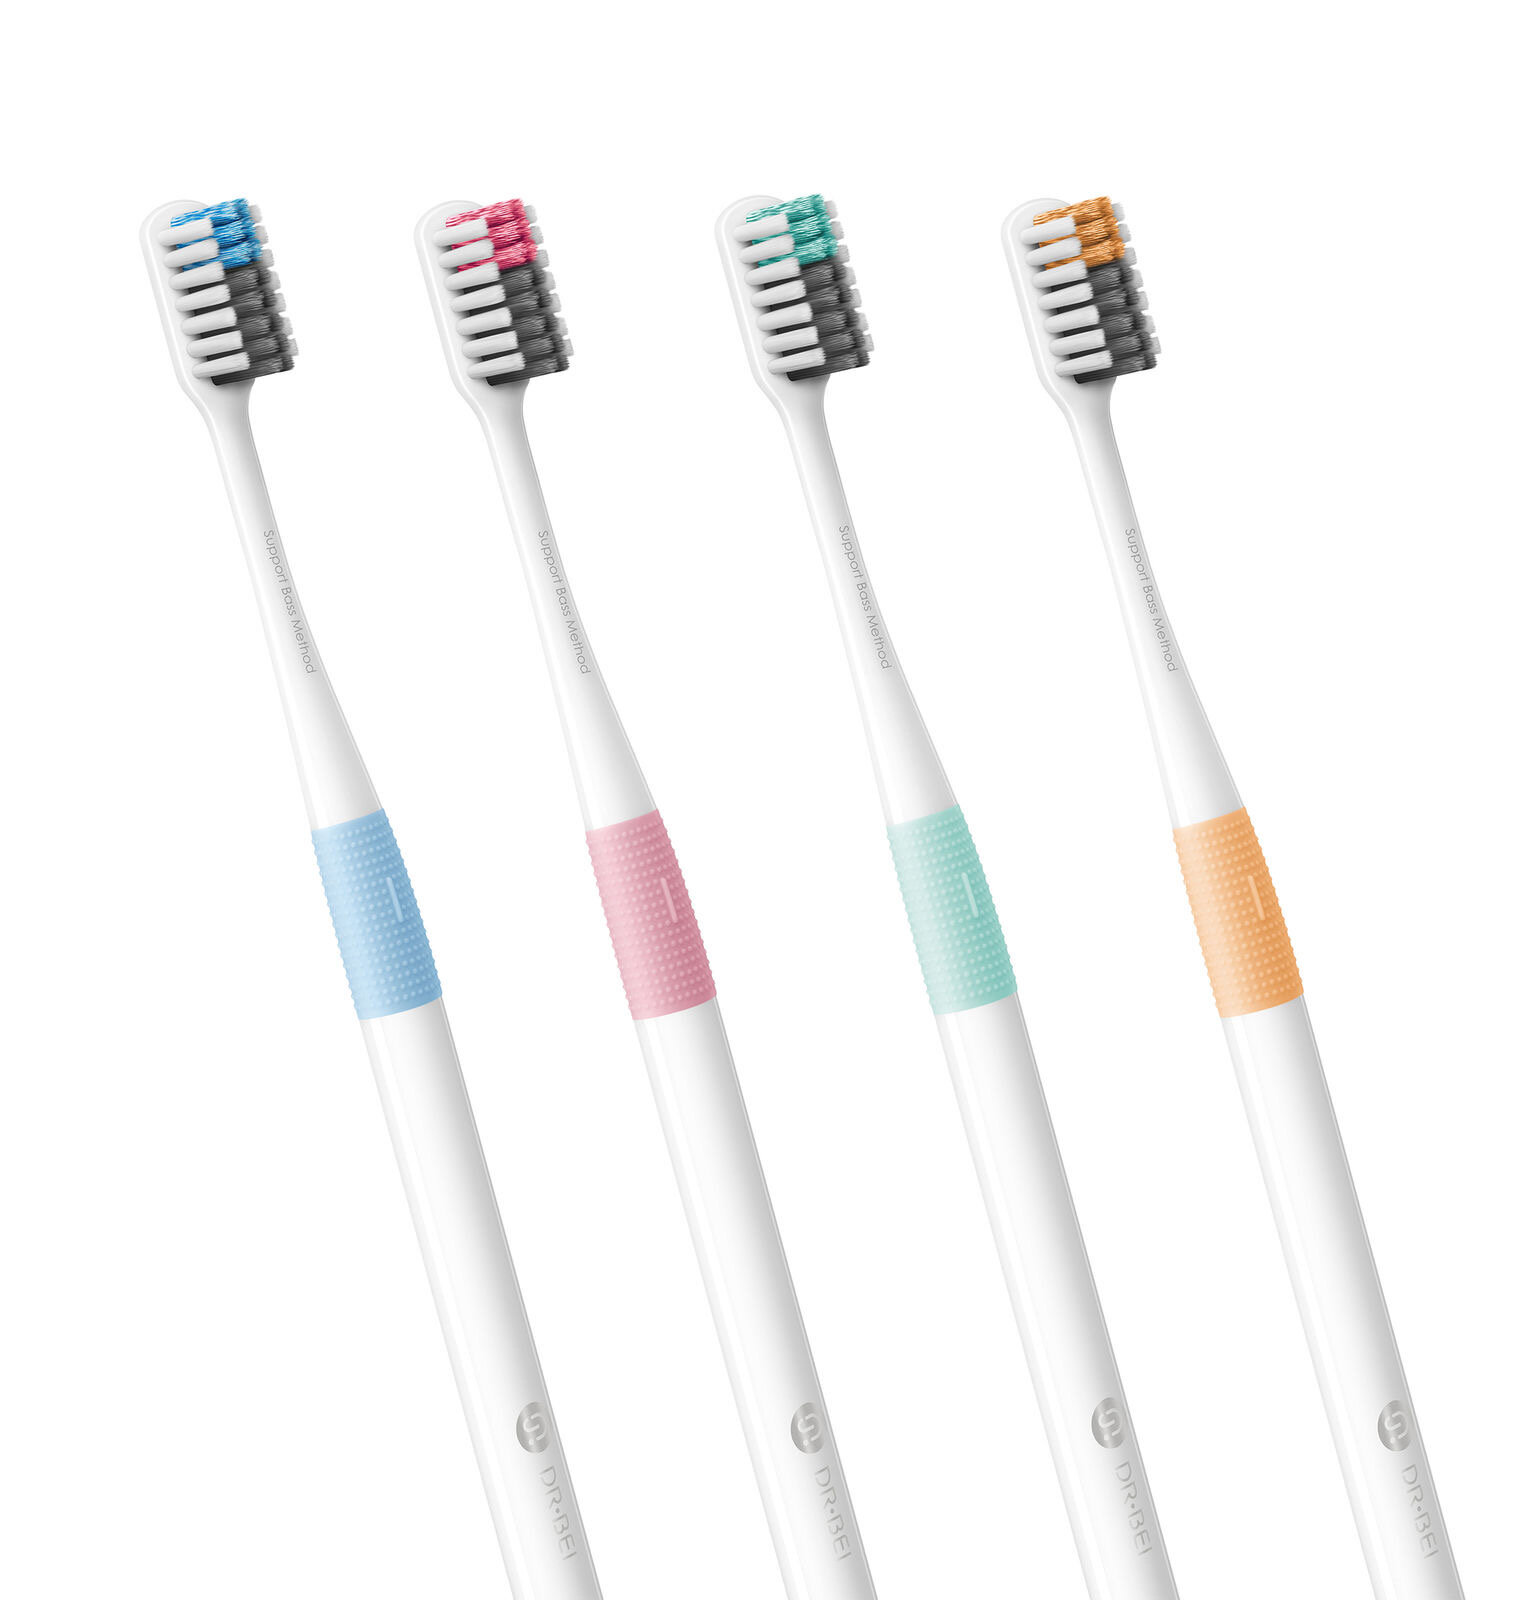 Набор зубных щеток DR.BEI Toothbrush 4-pack (4 colors) (MB0104010409)